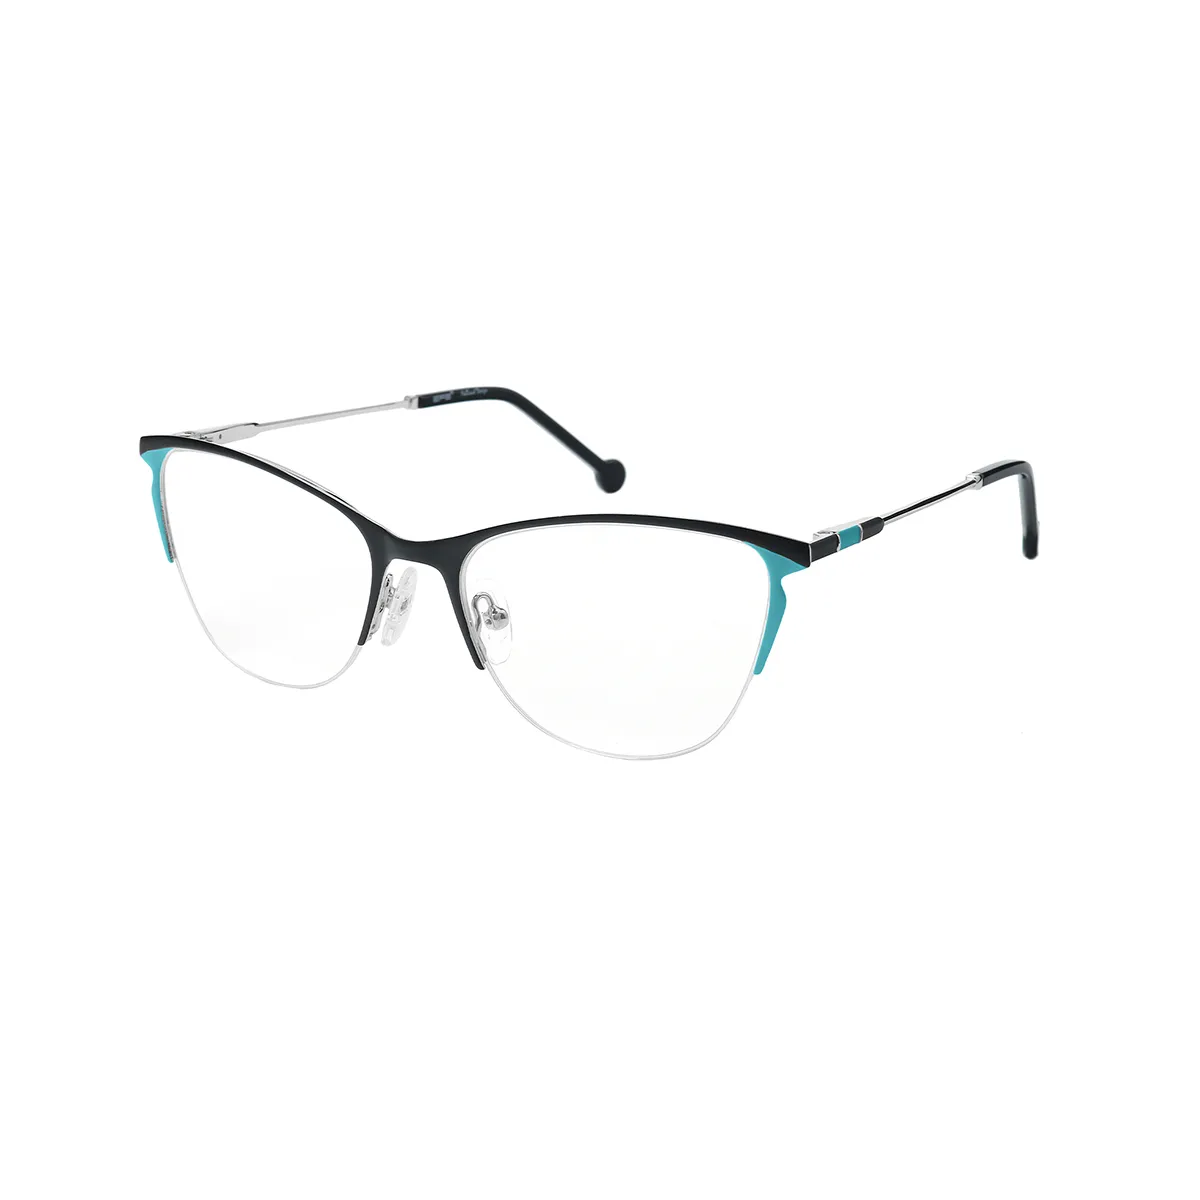 Octave - Cat-eye Black-Green Glasses for Women